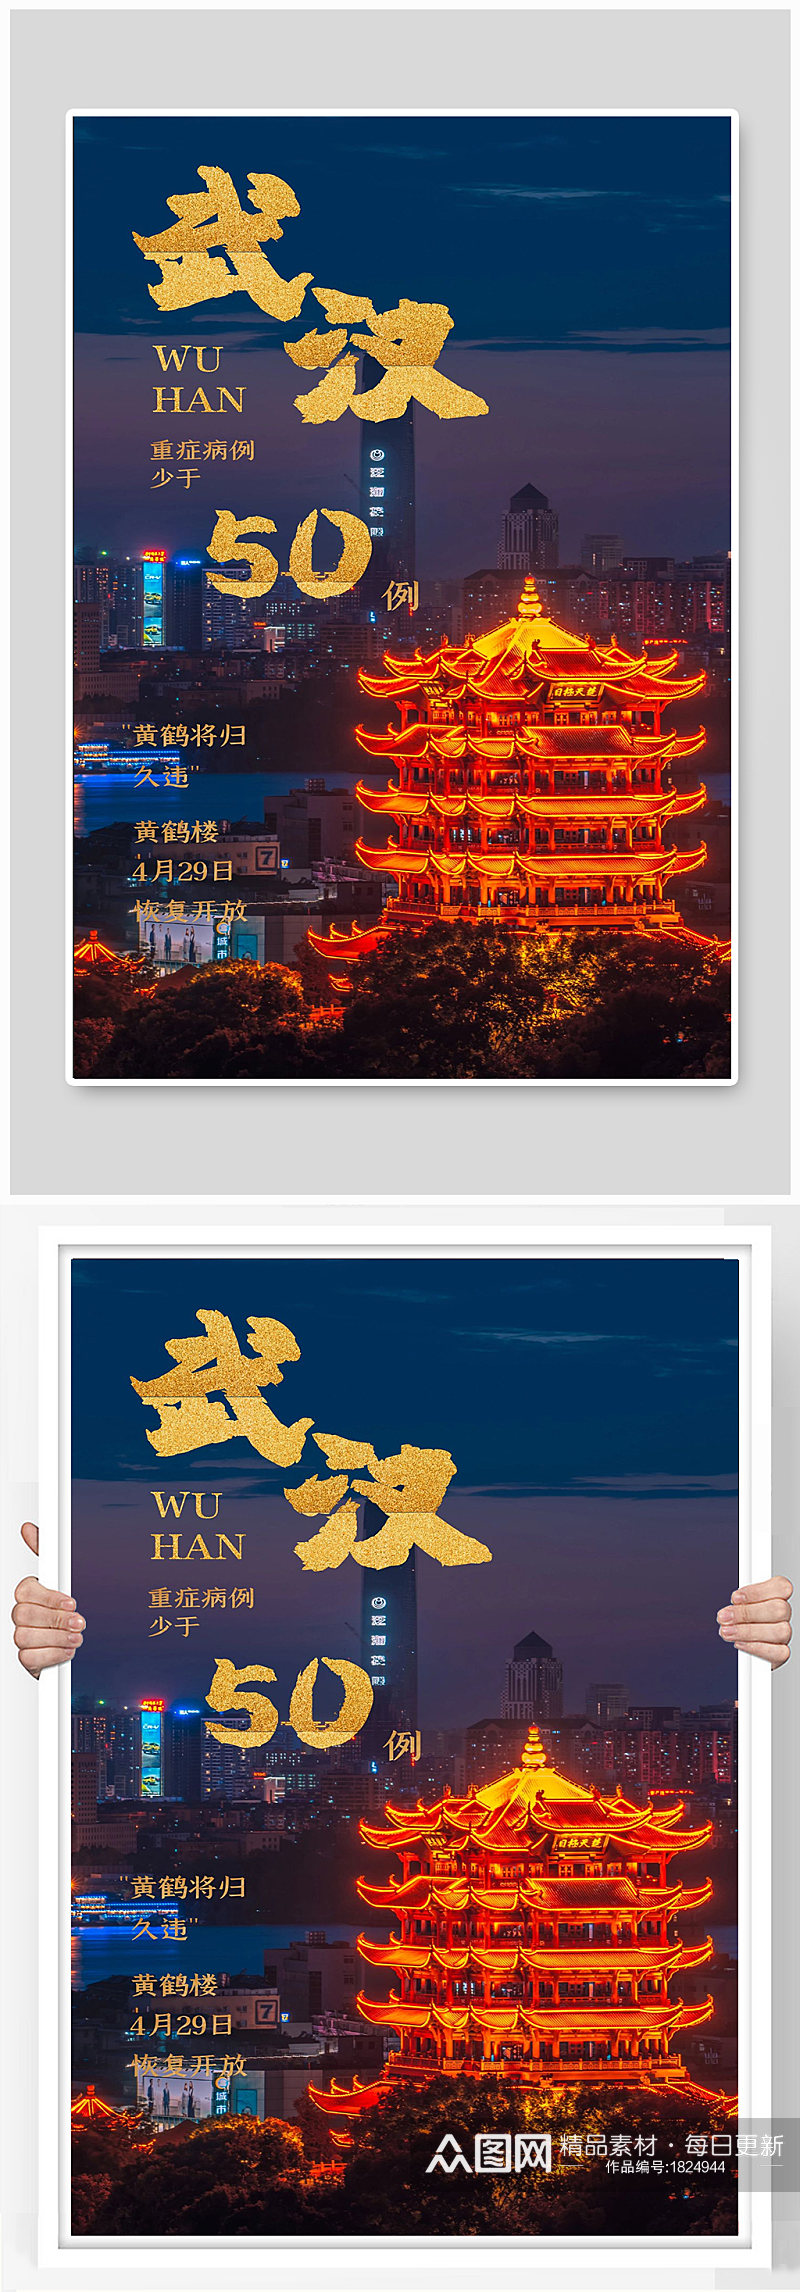 武汉加油宣传海报设计素材